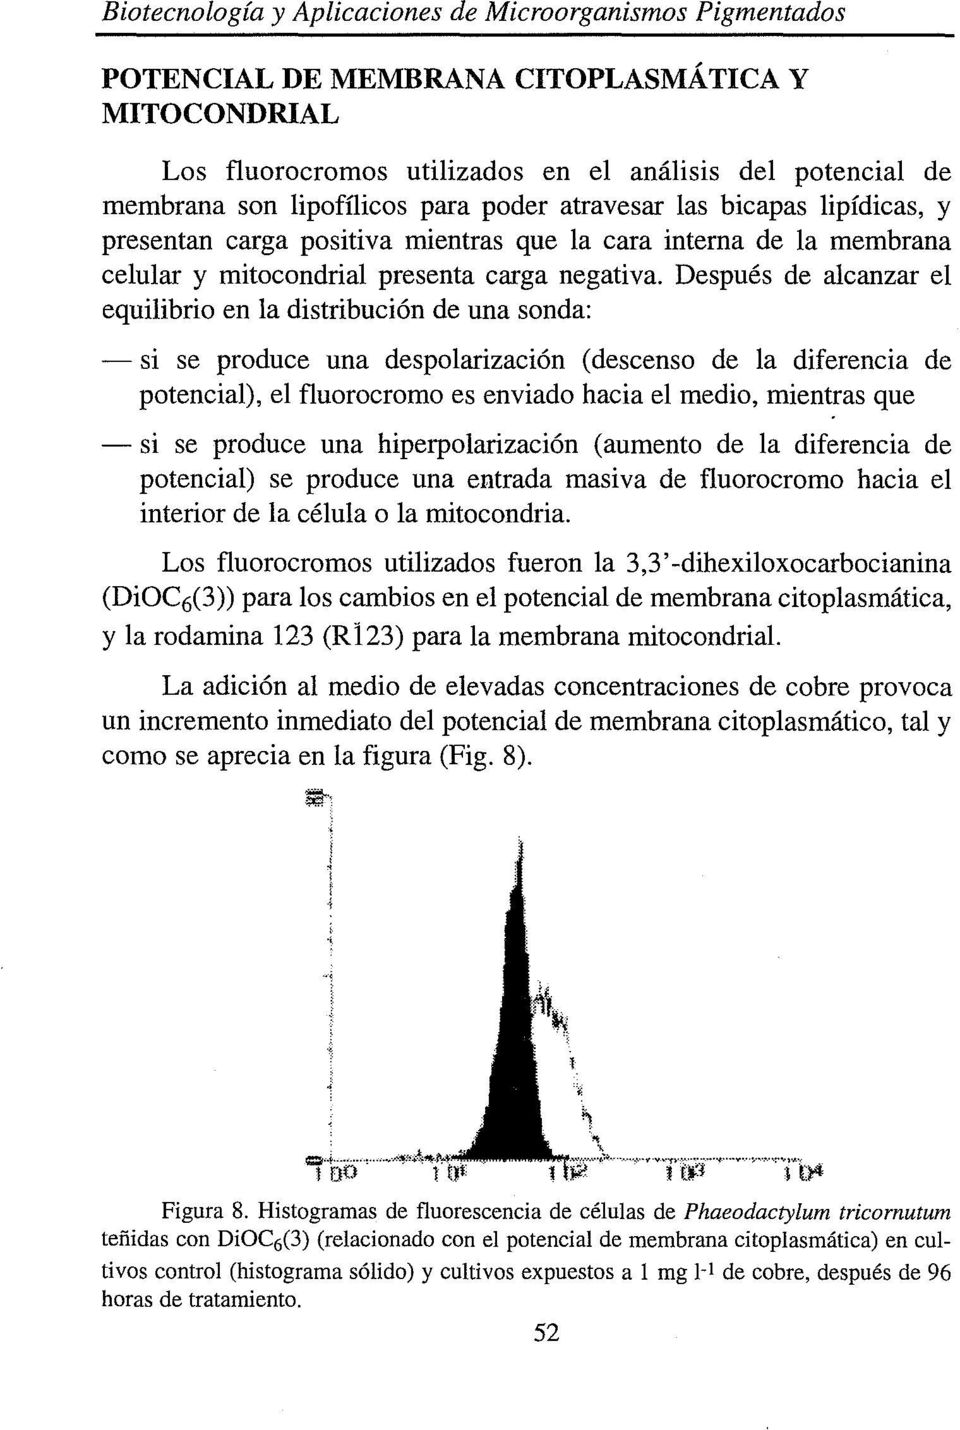 Después de alcanzar el equilibrio en la distribución de una sonda: - si se produce una despolarización (descenso de la diferencia de potencial), el fluorocromo es enviado hacia el medio, mientras que